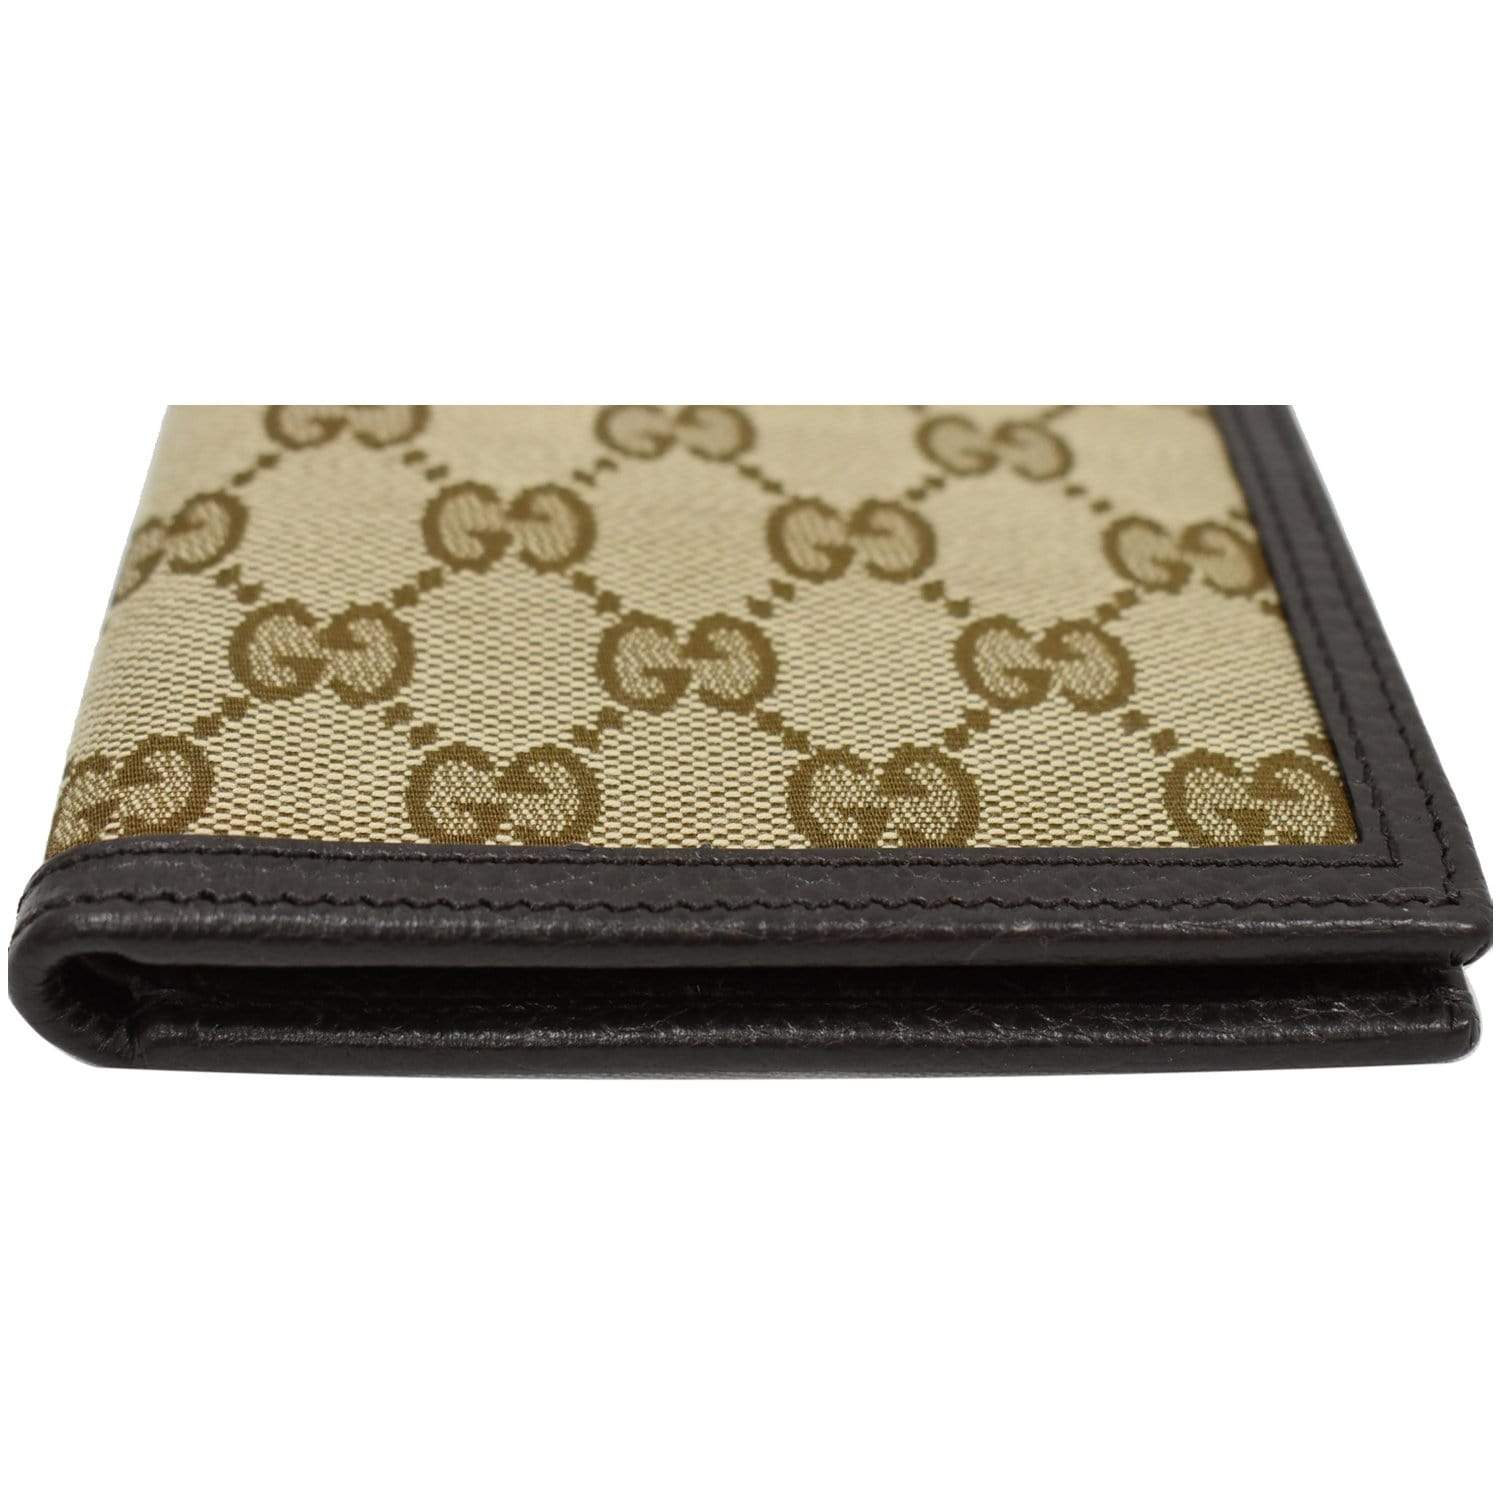 Gucci GG-canvas bi-fold Wallet - Farfetch